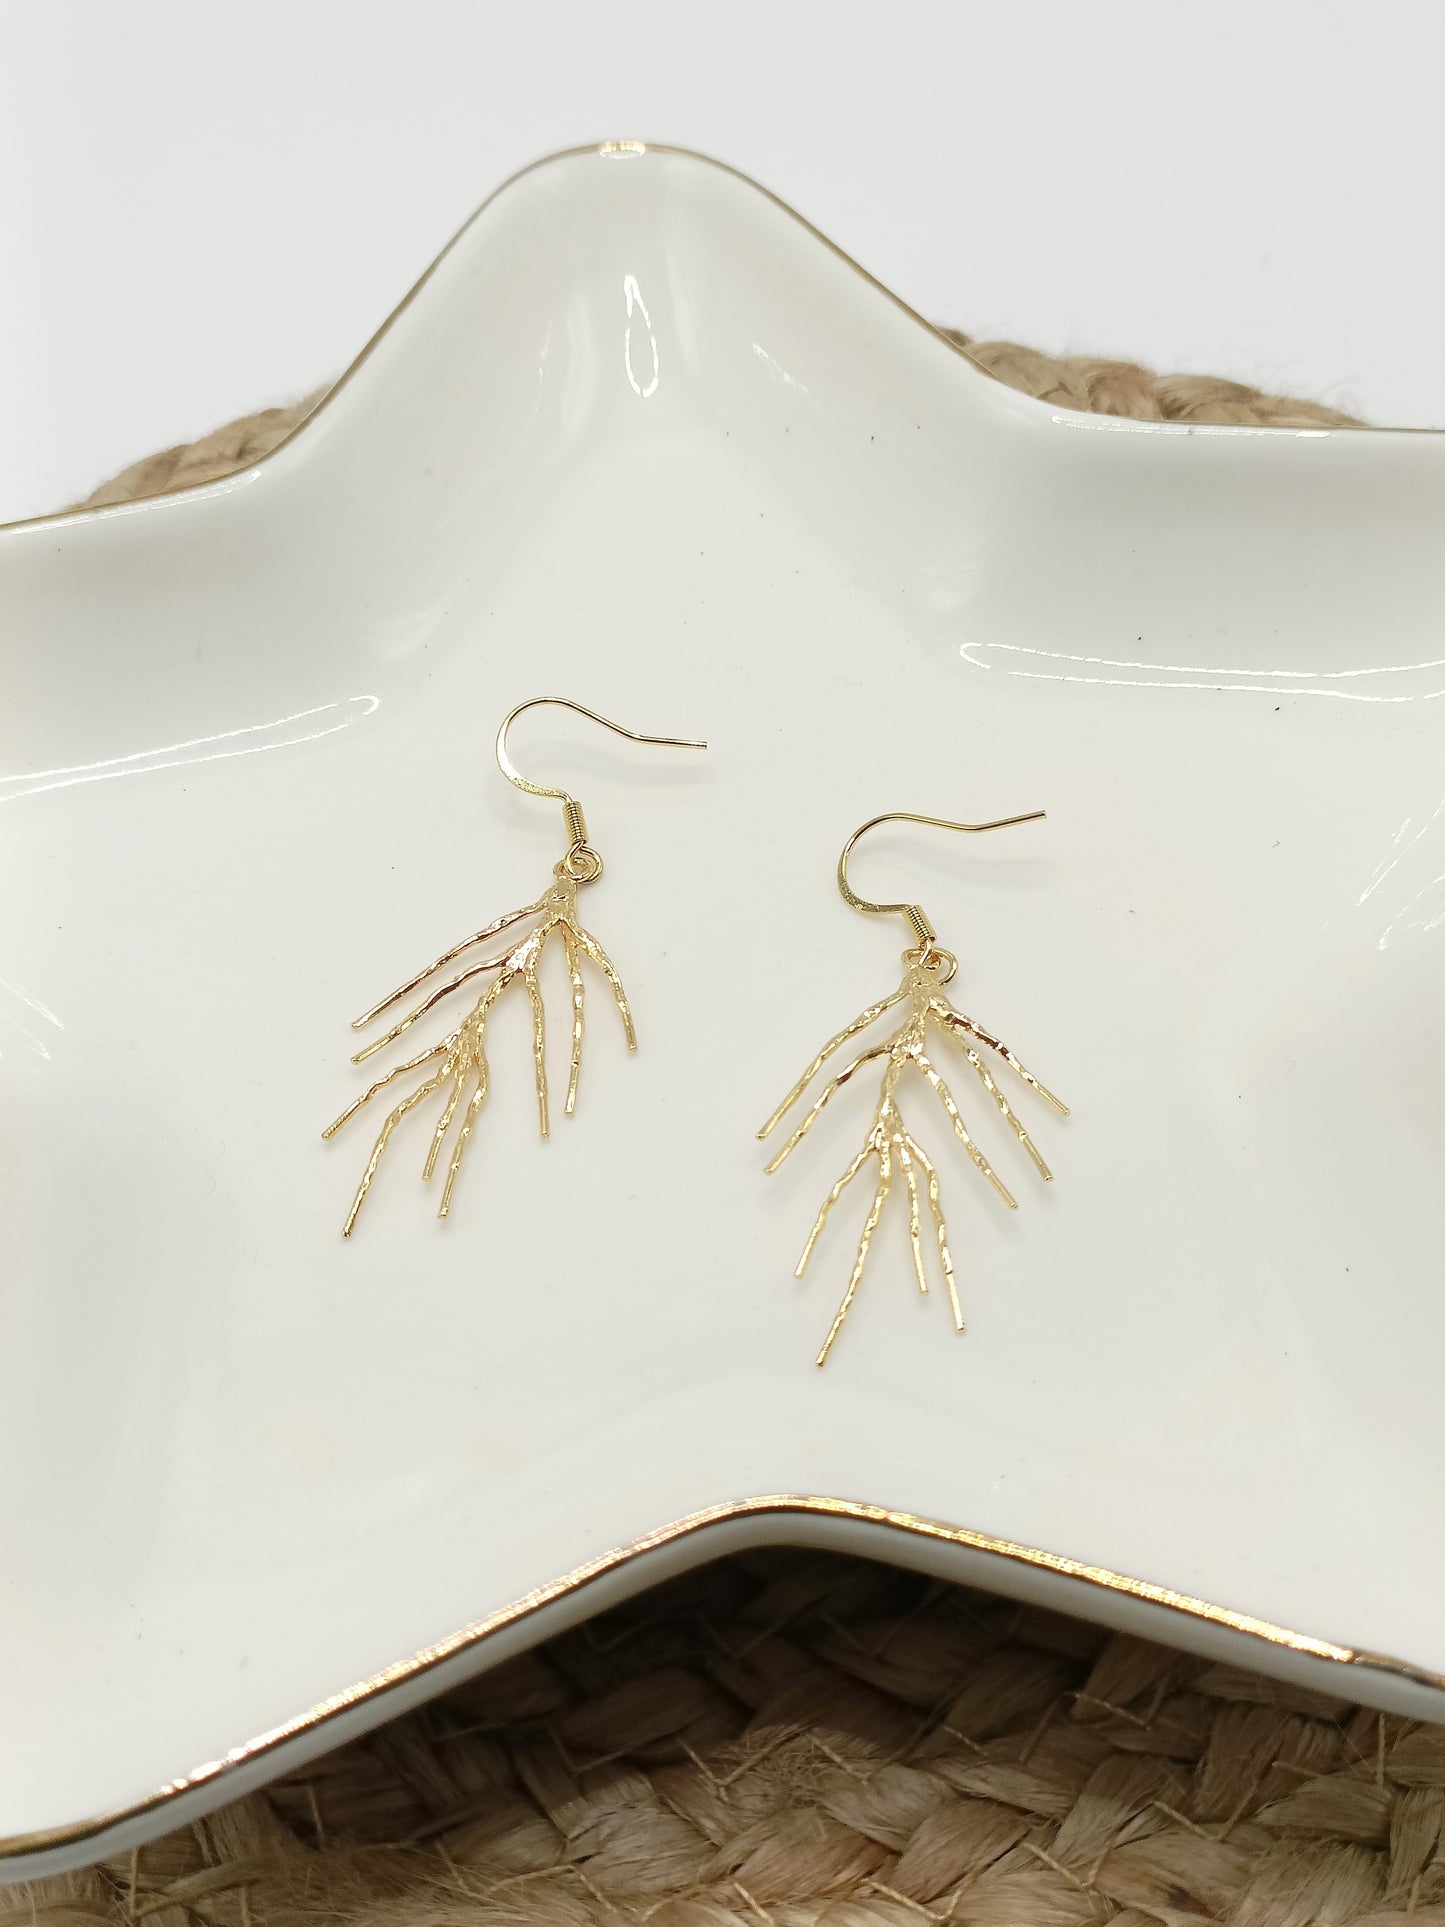 Boucles d'oreilles corail dorées à l'or fin, en percées ou clips, modernes et épurées